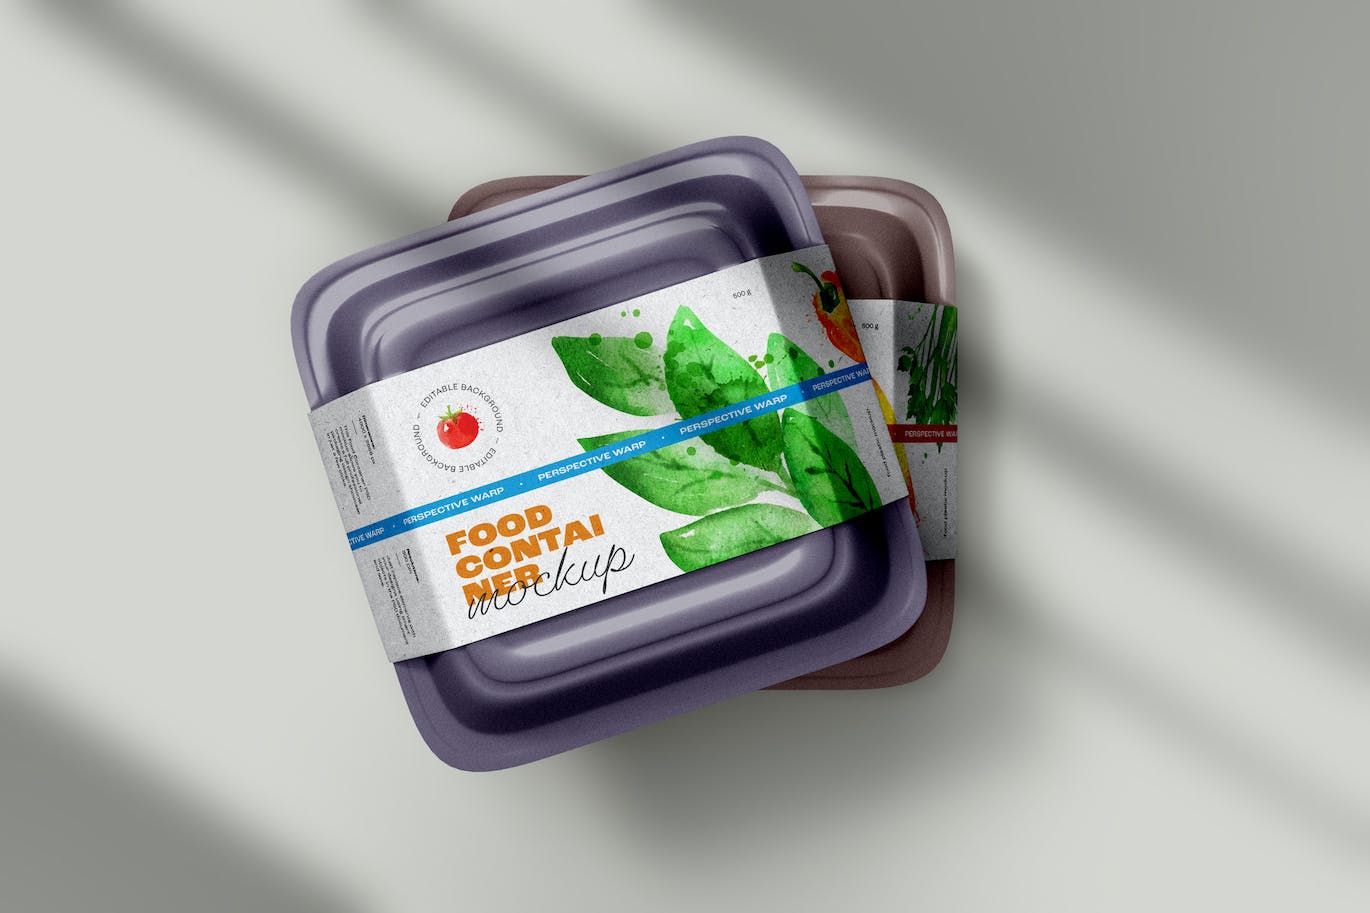 塑料食品容器包装样机 (PSD)